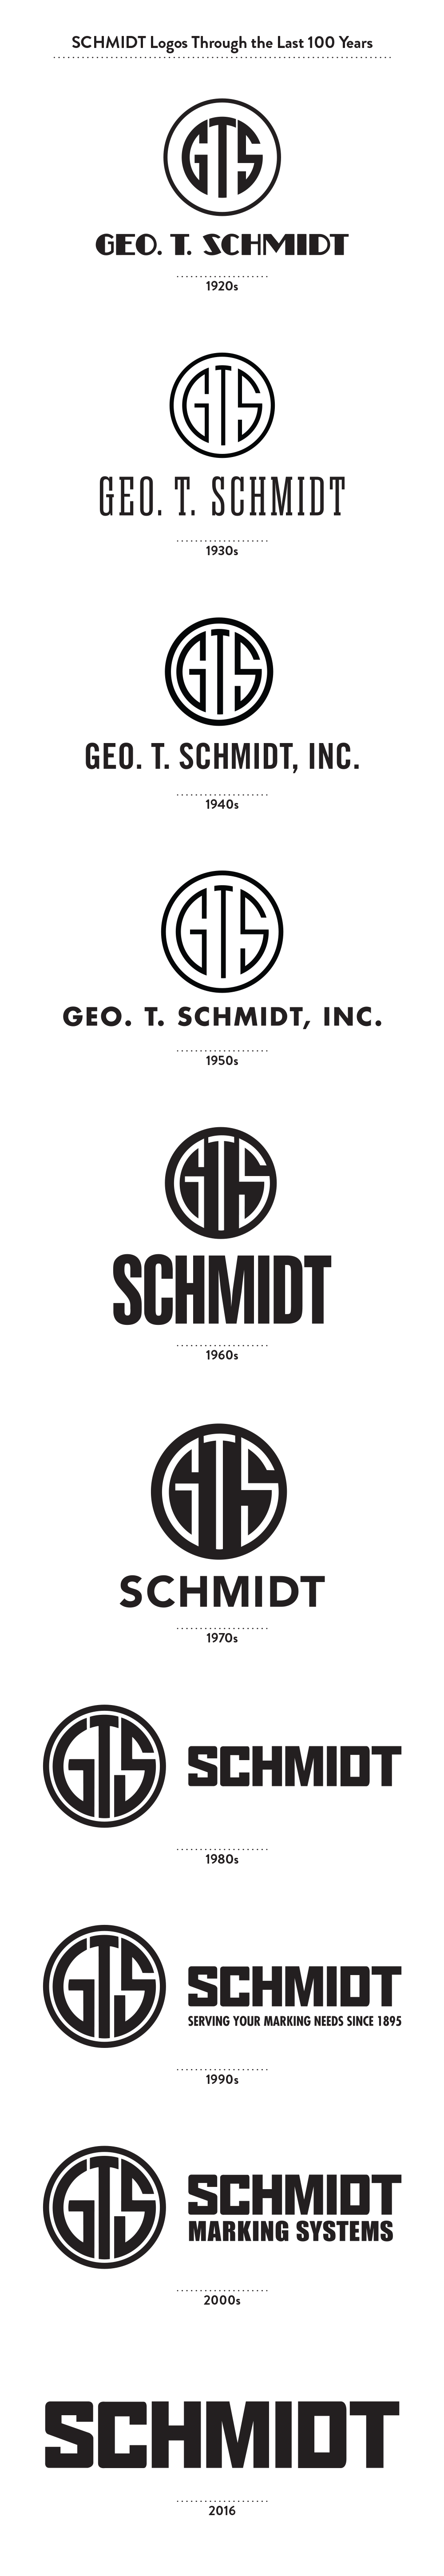 The Evolution of GT SCHMIDT’s Brand